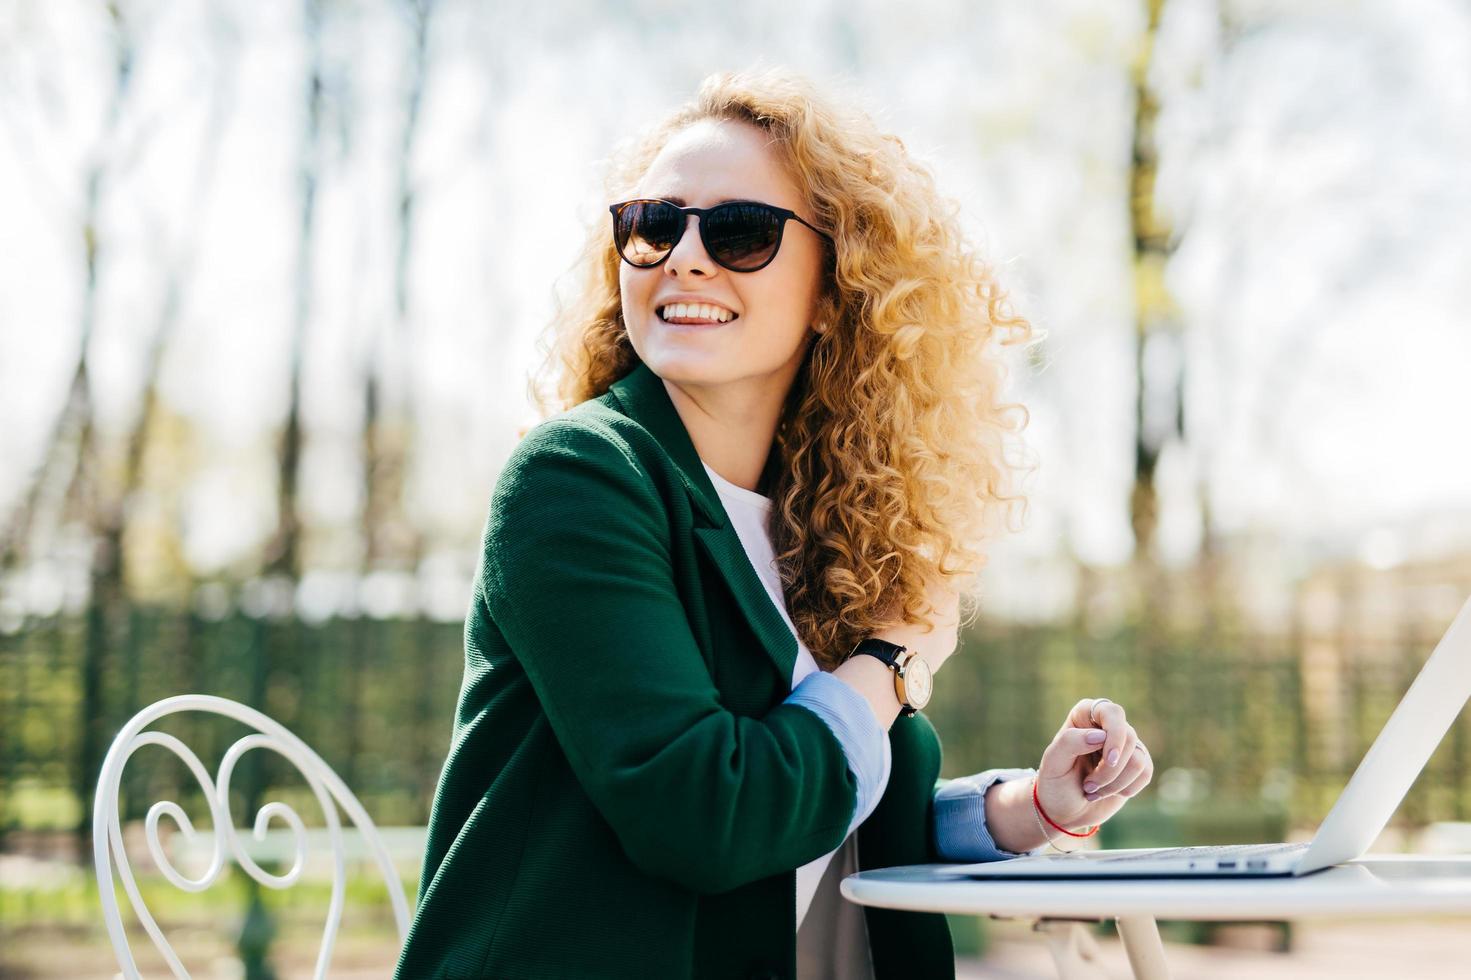 mulher elegante feliz com cabelos claros encaracolados usando óculos escuros trabalhando com laptop lá fora no parque digitando documentos necessários voltando a notar alguém na rua. mulher alegre descansando foto